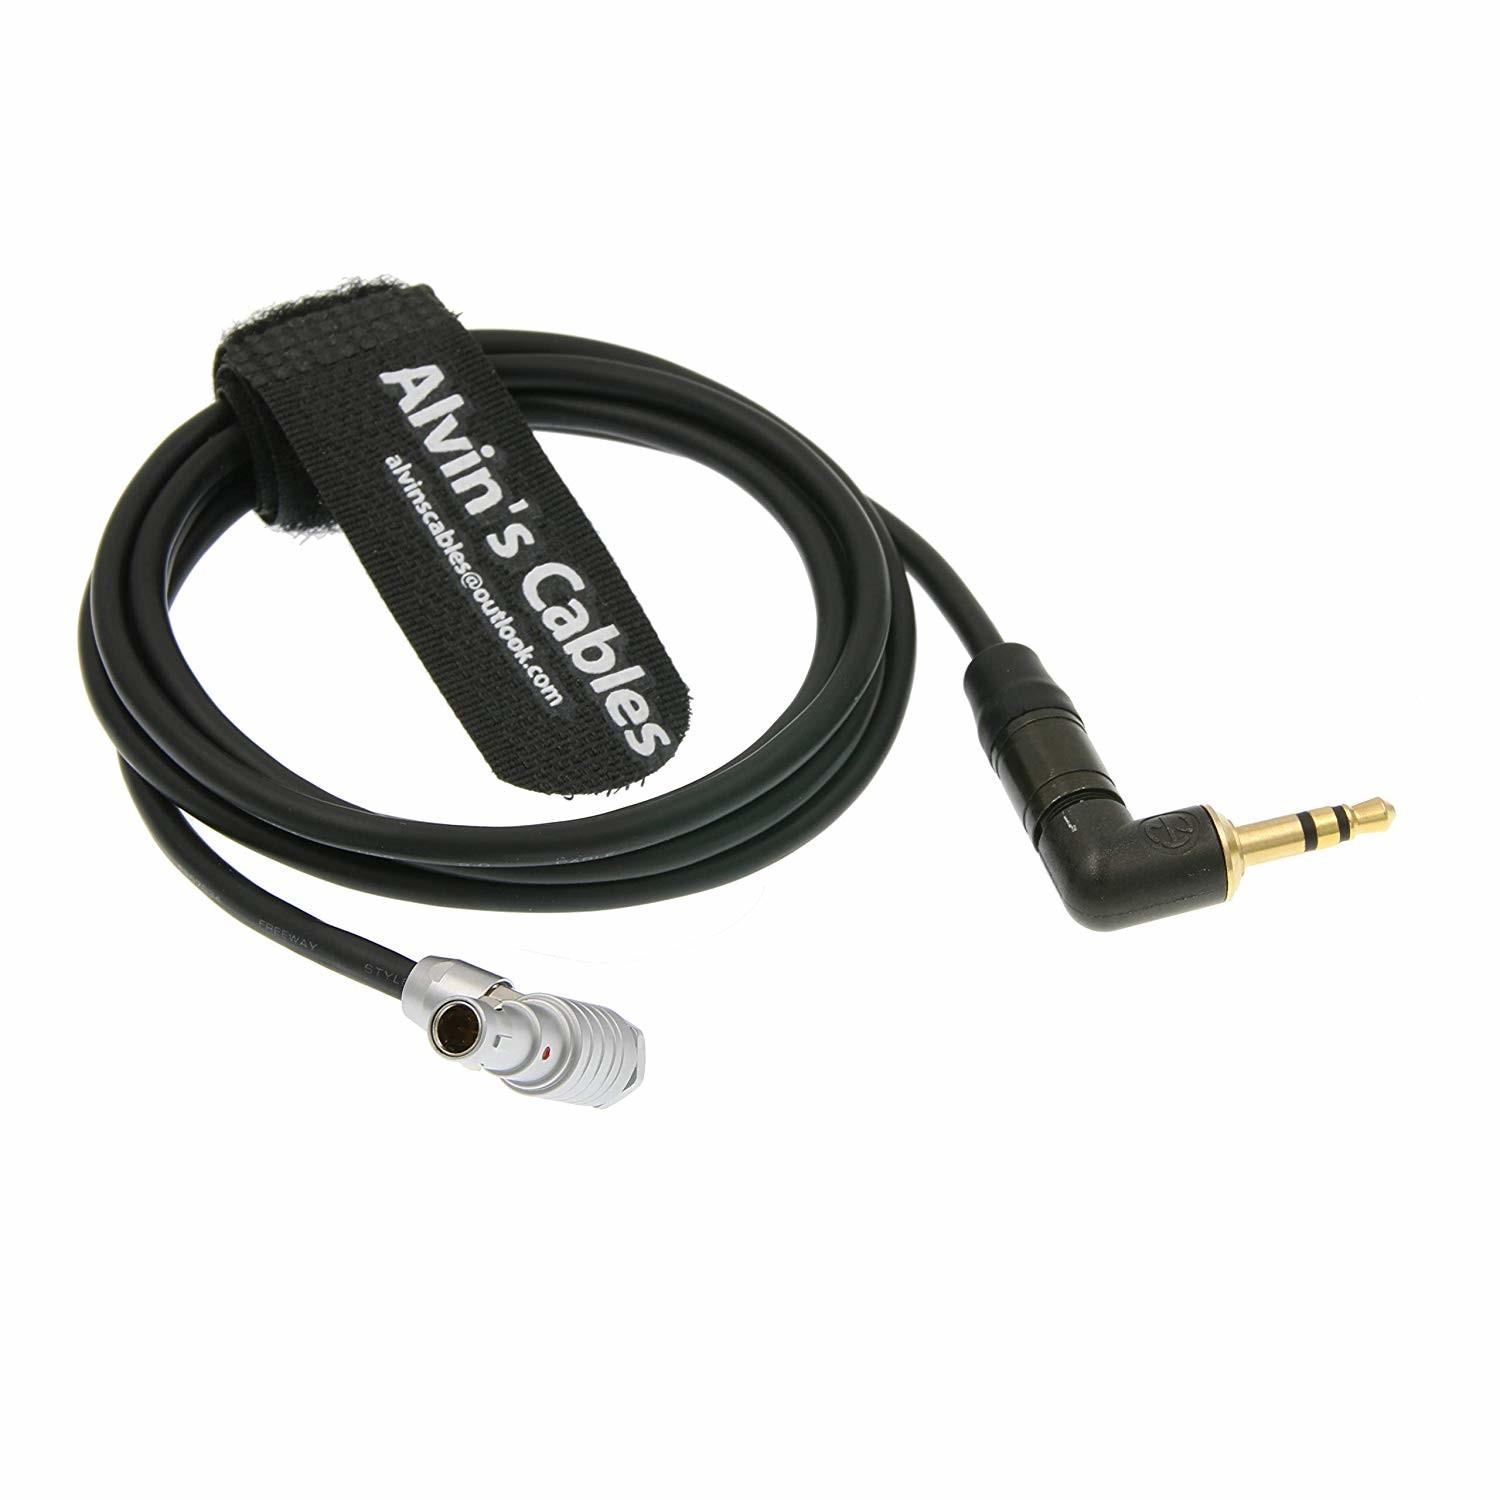 Alvin's Cables Audio Cable for ARRI Alexa Mini Camera 5 Pin Right 